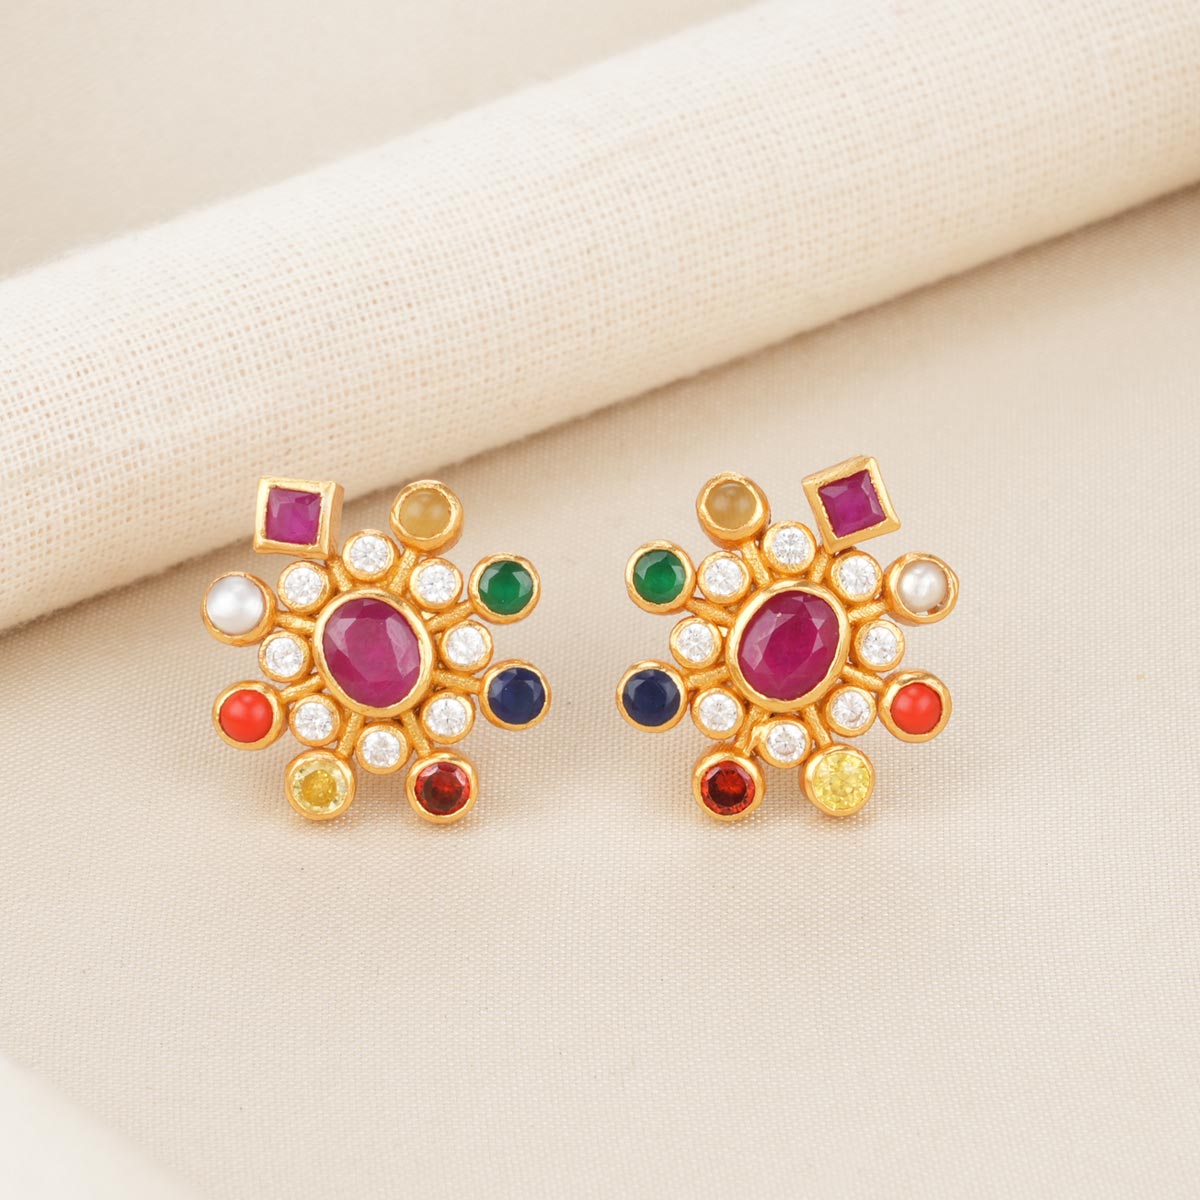 Buy 1800+ Gold Earrings Online | BlueStone.com - India's #1 Online Jewellery  Brand